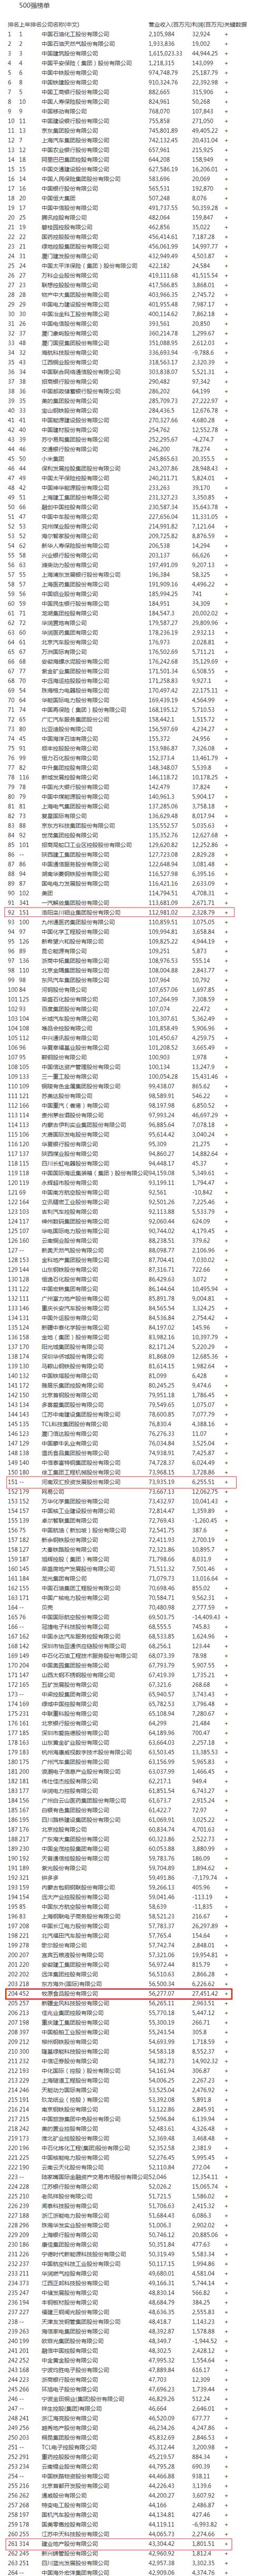 中国企业500强股票